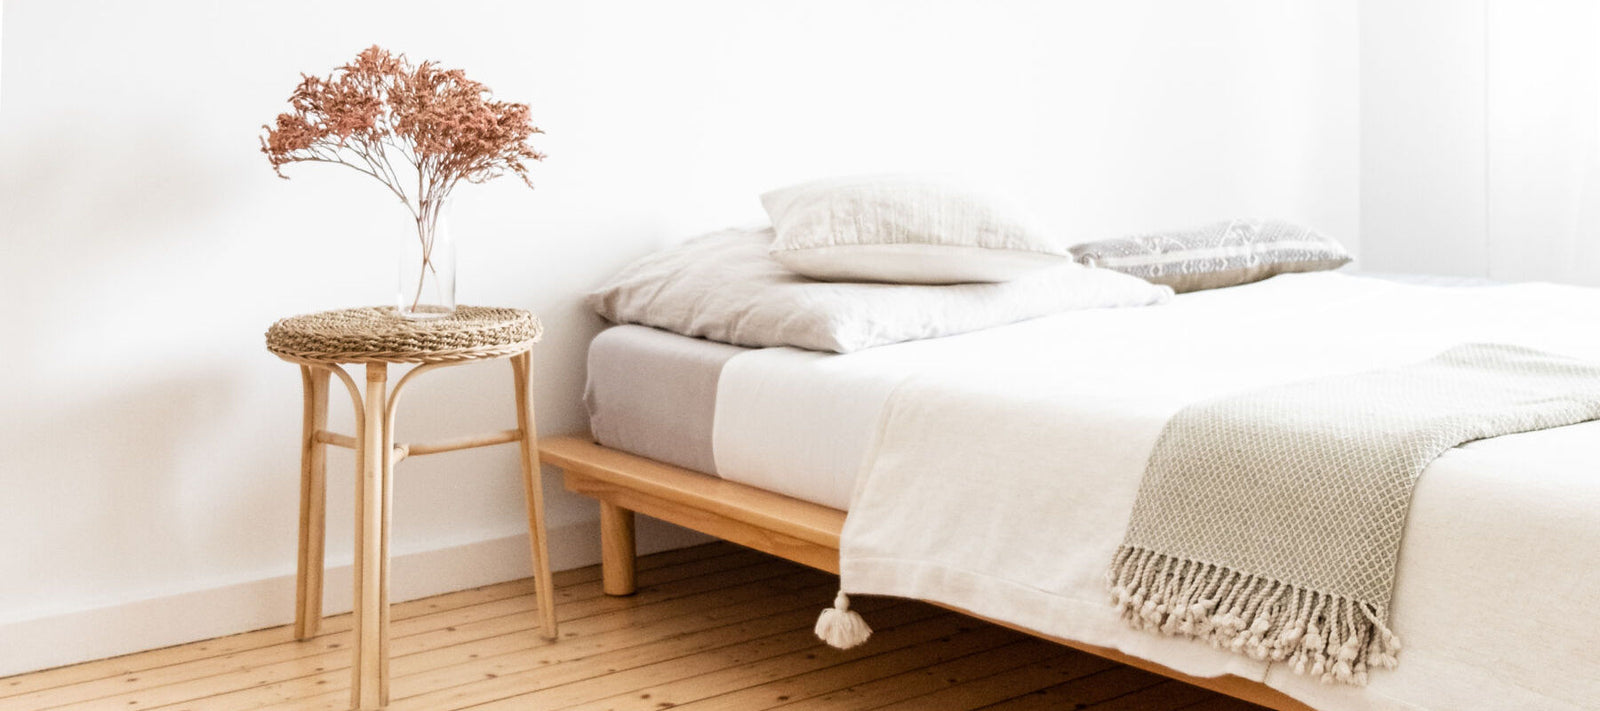 Tipps für den minimalistischen Wohnstil   atisan